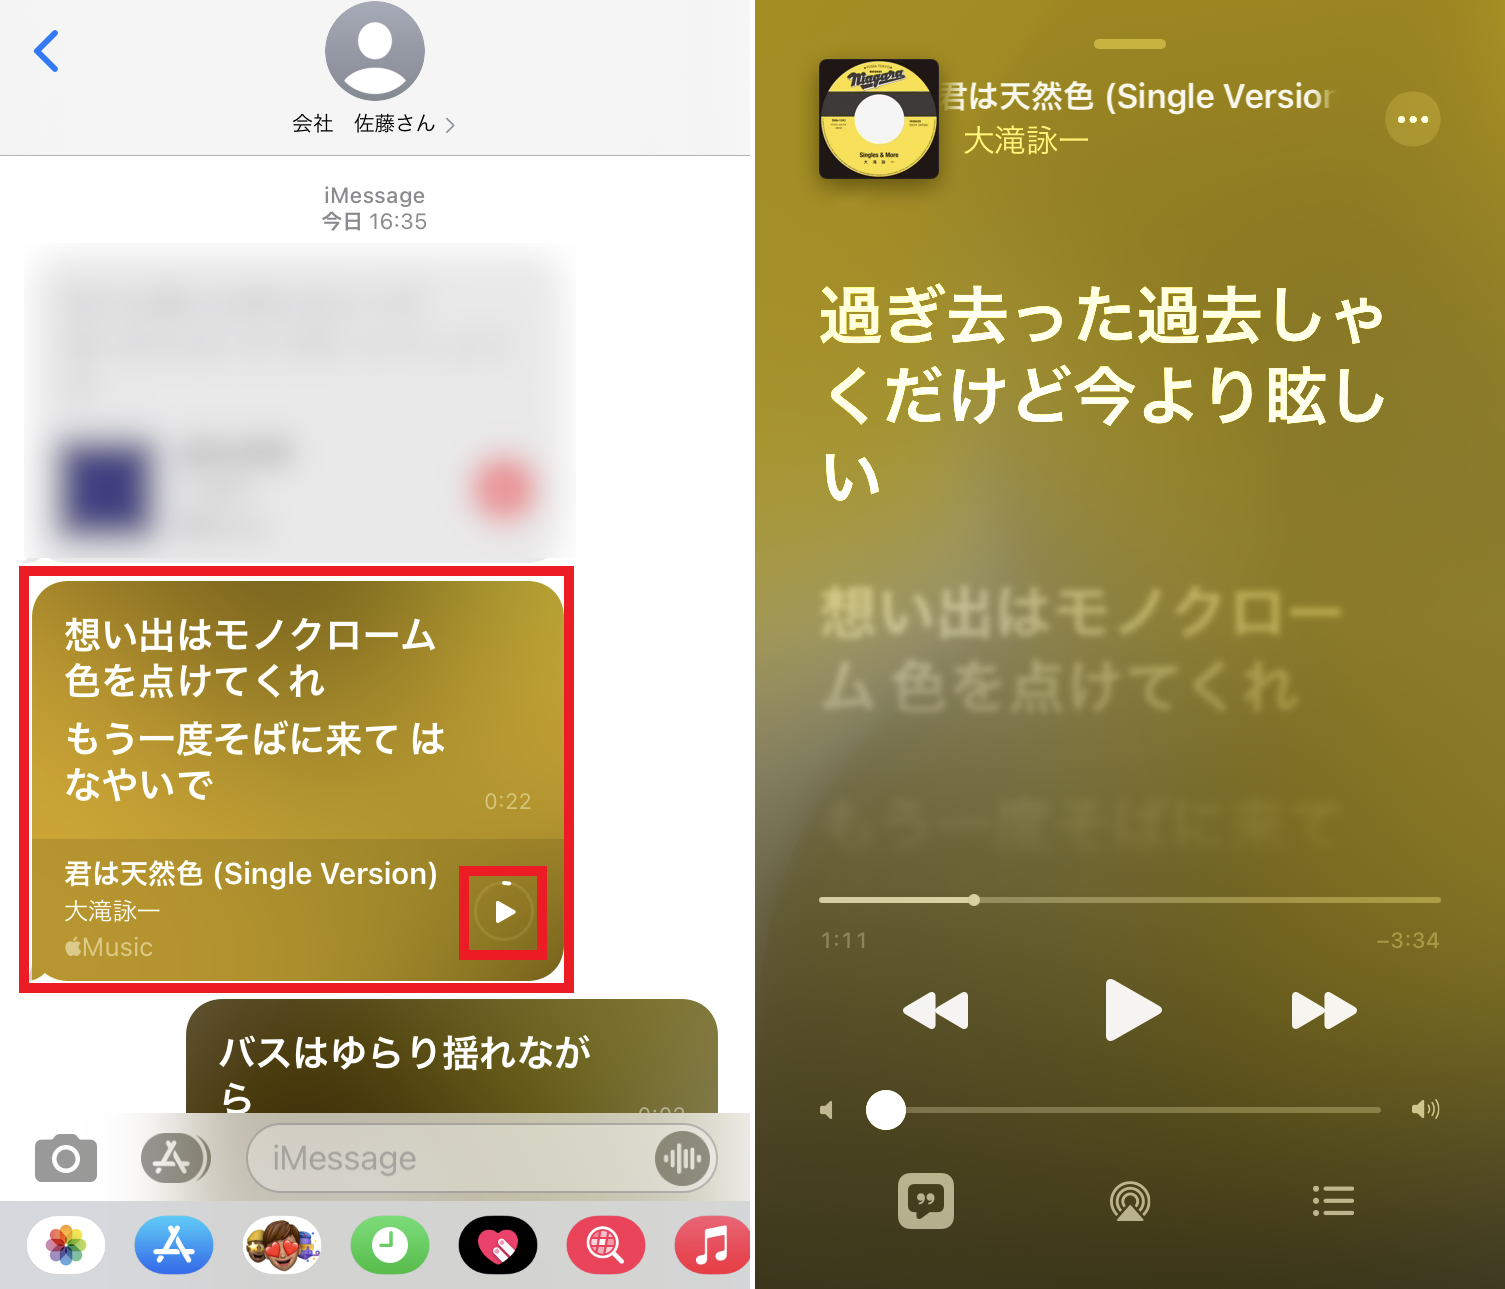 Apple Musicなら歌詞が共有できる おすすめをシェアしてみて Iphone Tips Engadget 日本版